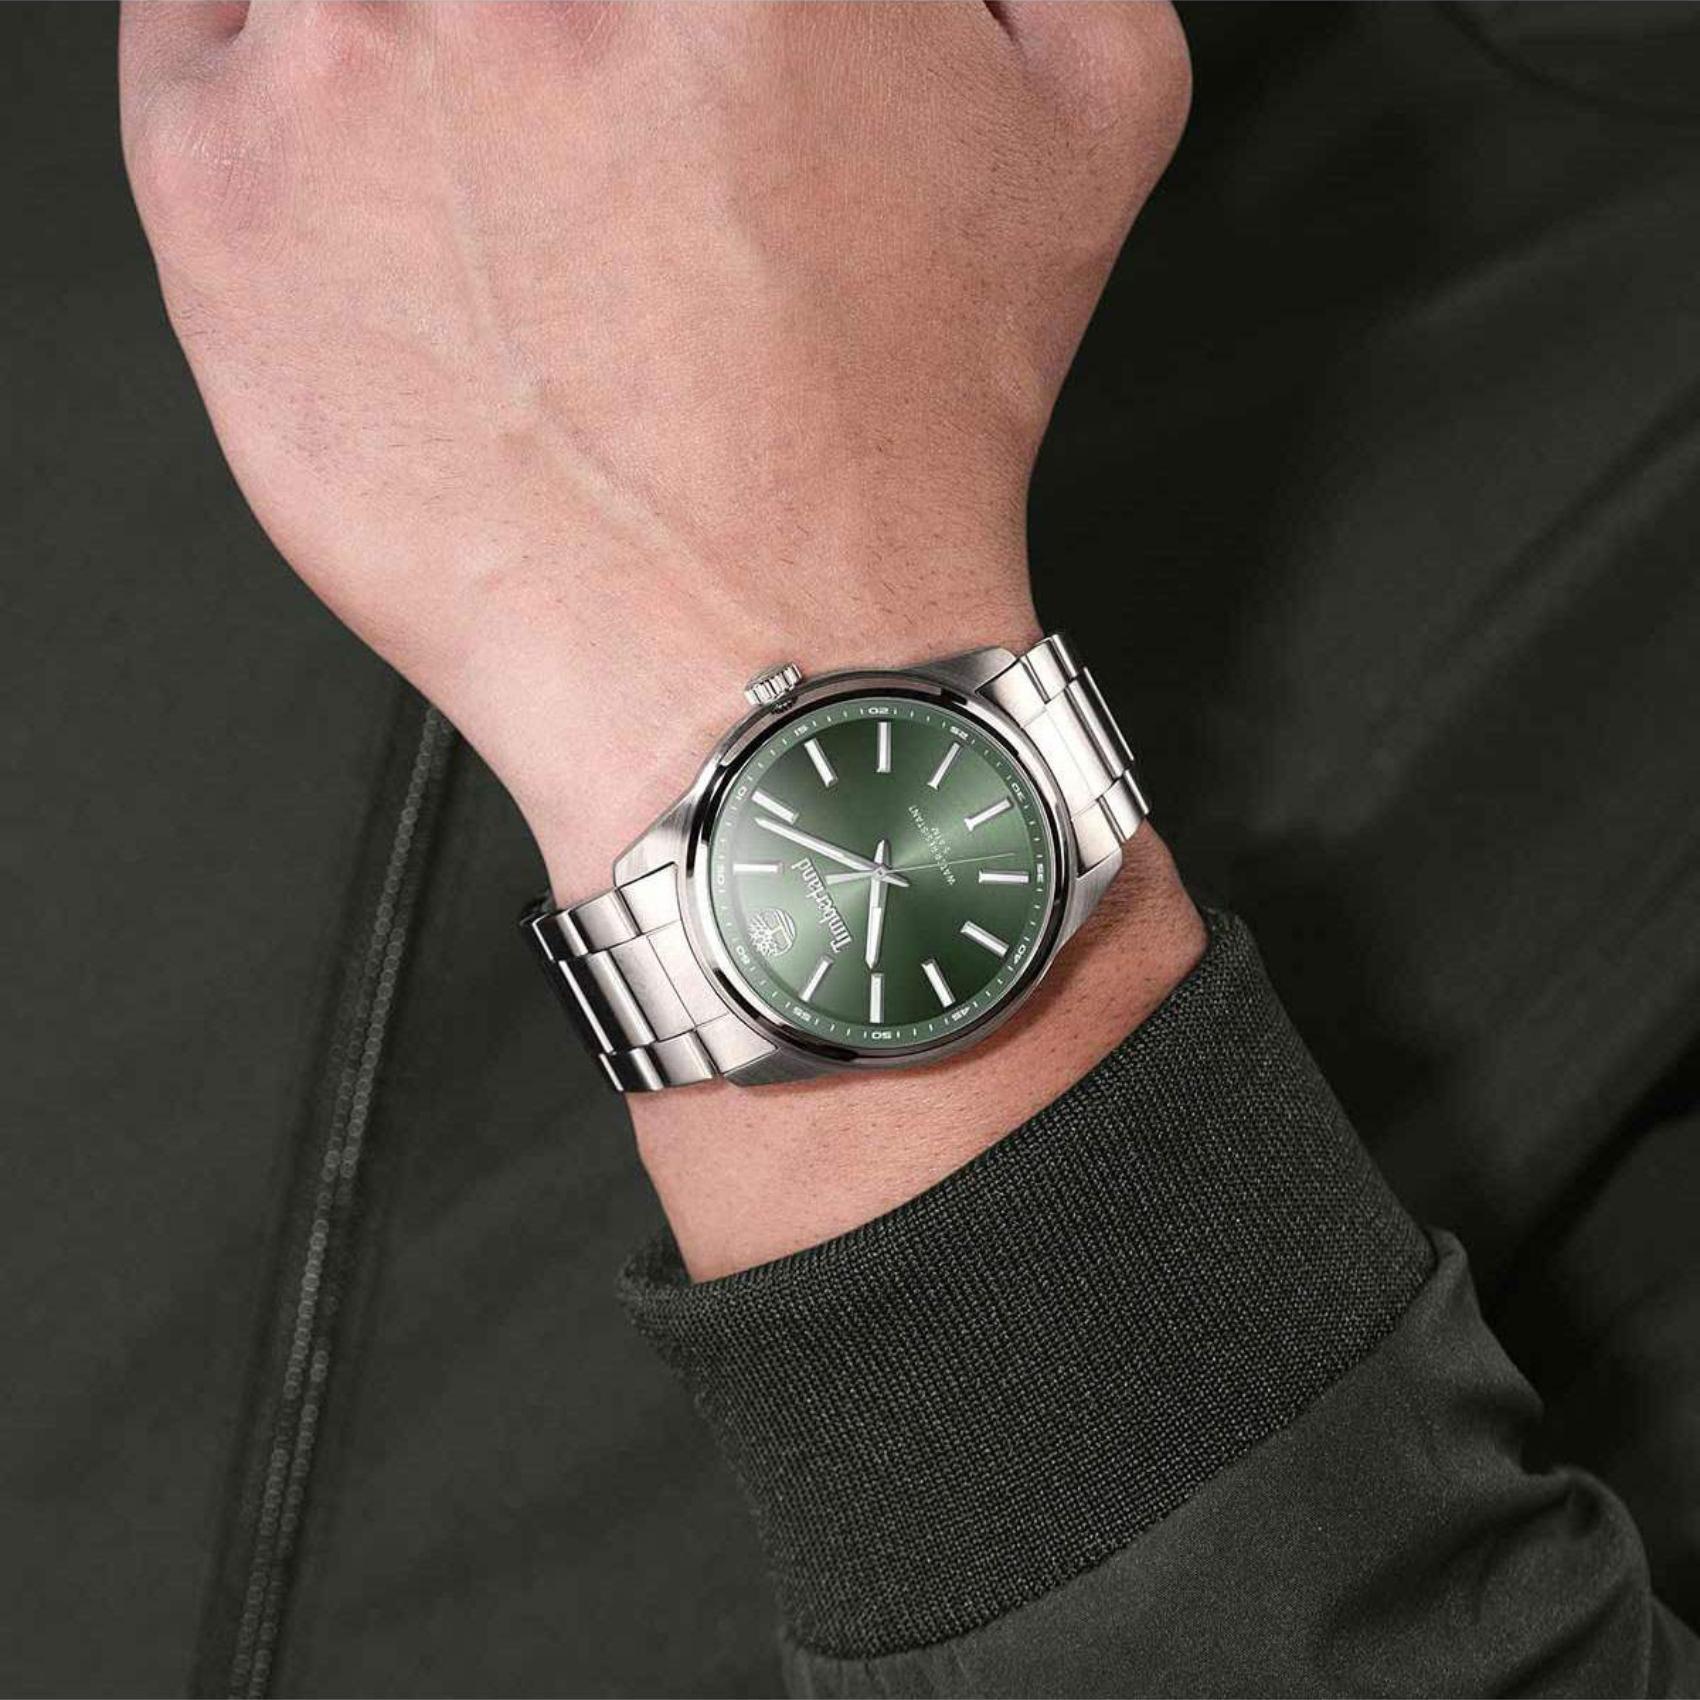 Αντρικό ρολόι Timberland Northbridge TDWGG0030002 με ασημί ατσάλινο μπρσελέ και πράσινο καντράν διαμέτρου 46mm και ημέρα-ημερομηνία.